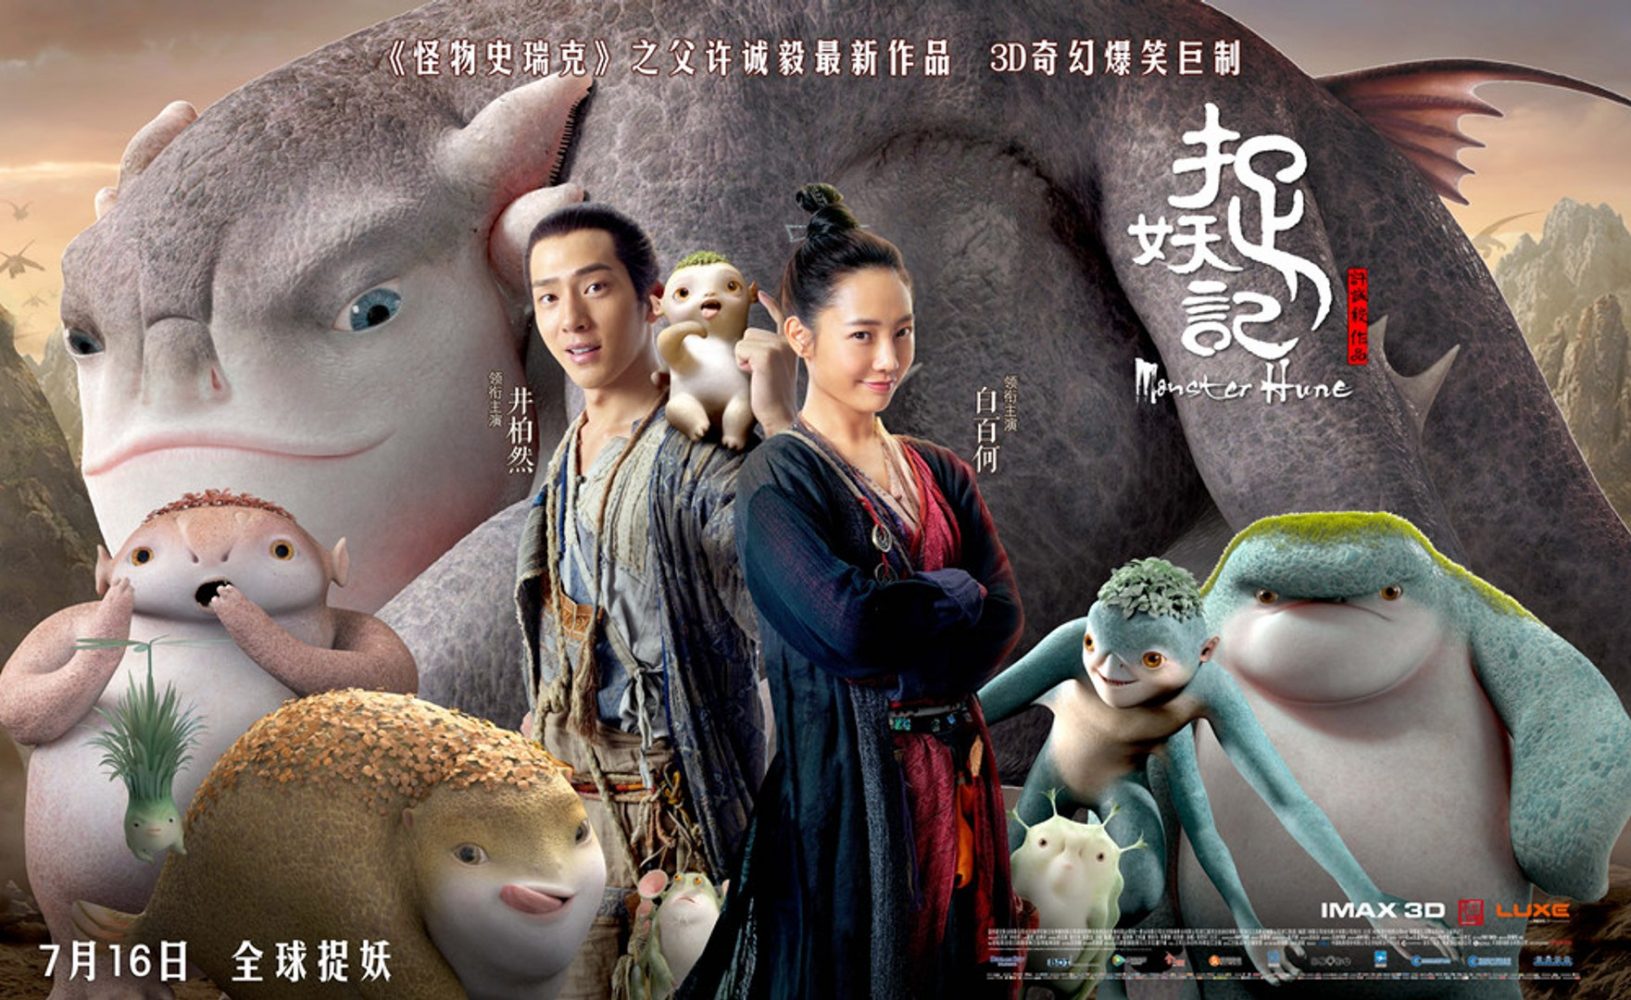 Phim hài - lãng mạn Trung Quốc: Truy lùng quái yêu 1, 2 - Monster Hunt 1, 2 (2015-2018)